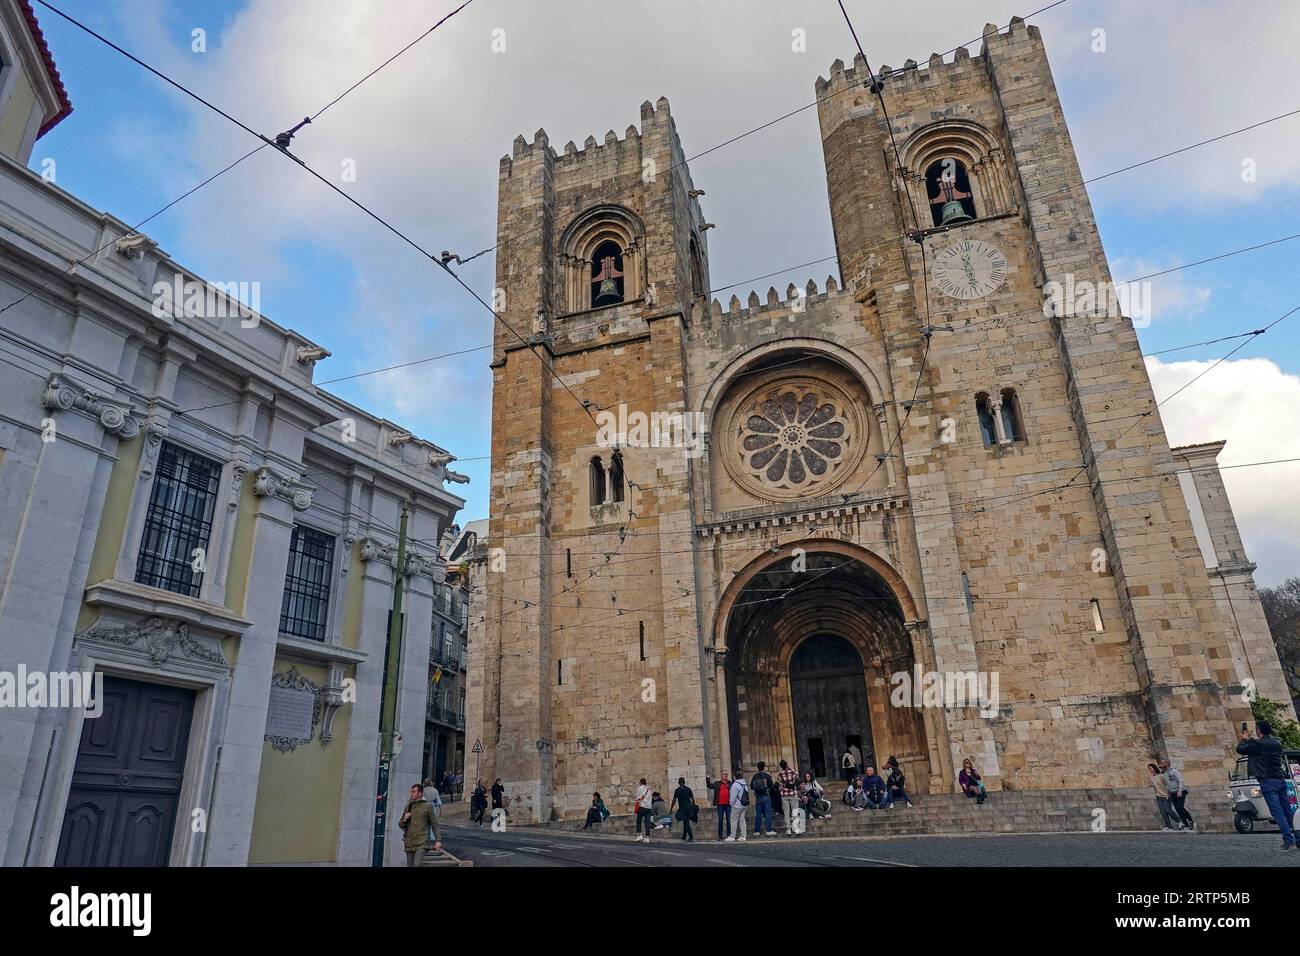 Portugal, Lisbonne, la cathédrale Sainte Marie majeure souvent appelée cathédrale de Lisbonne ou simplement le se (se de Lisboa), est une cathédrale catholique romaine construite Banque D'Images